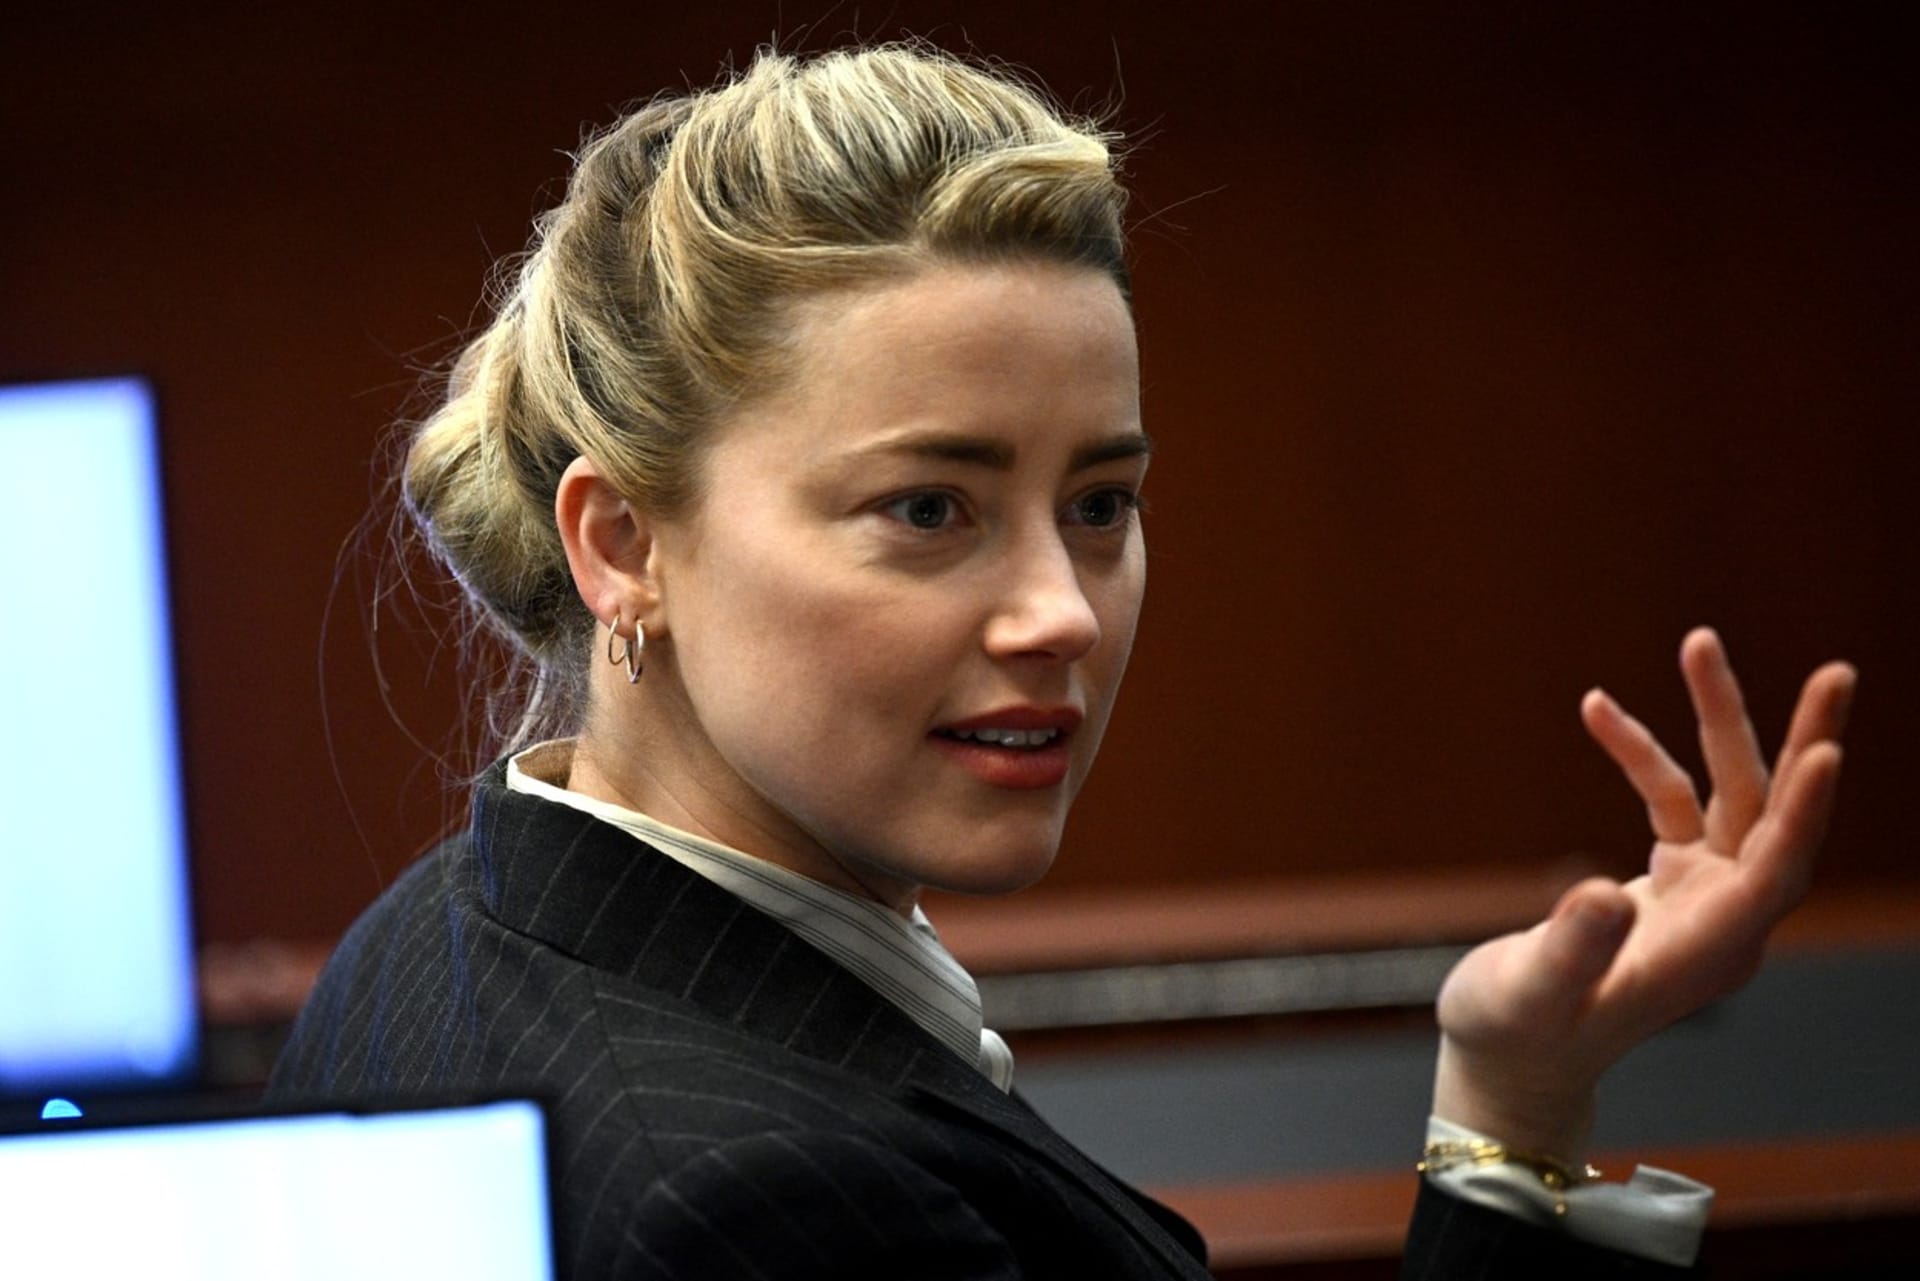 Usvědčuje nové video Amber Heard z nevěry?